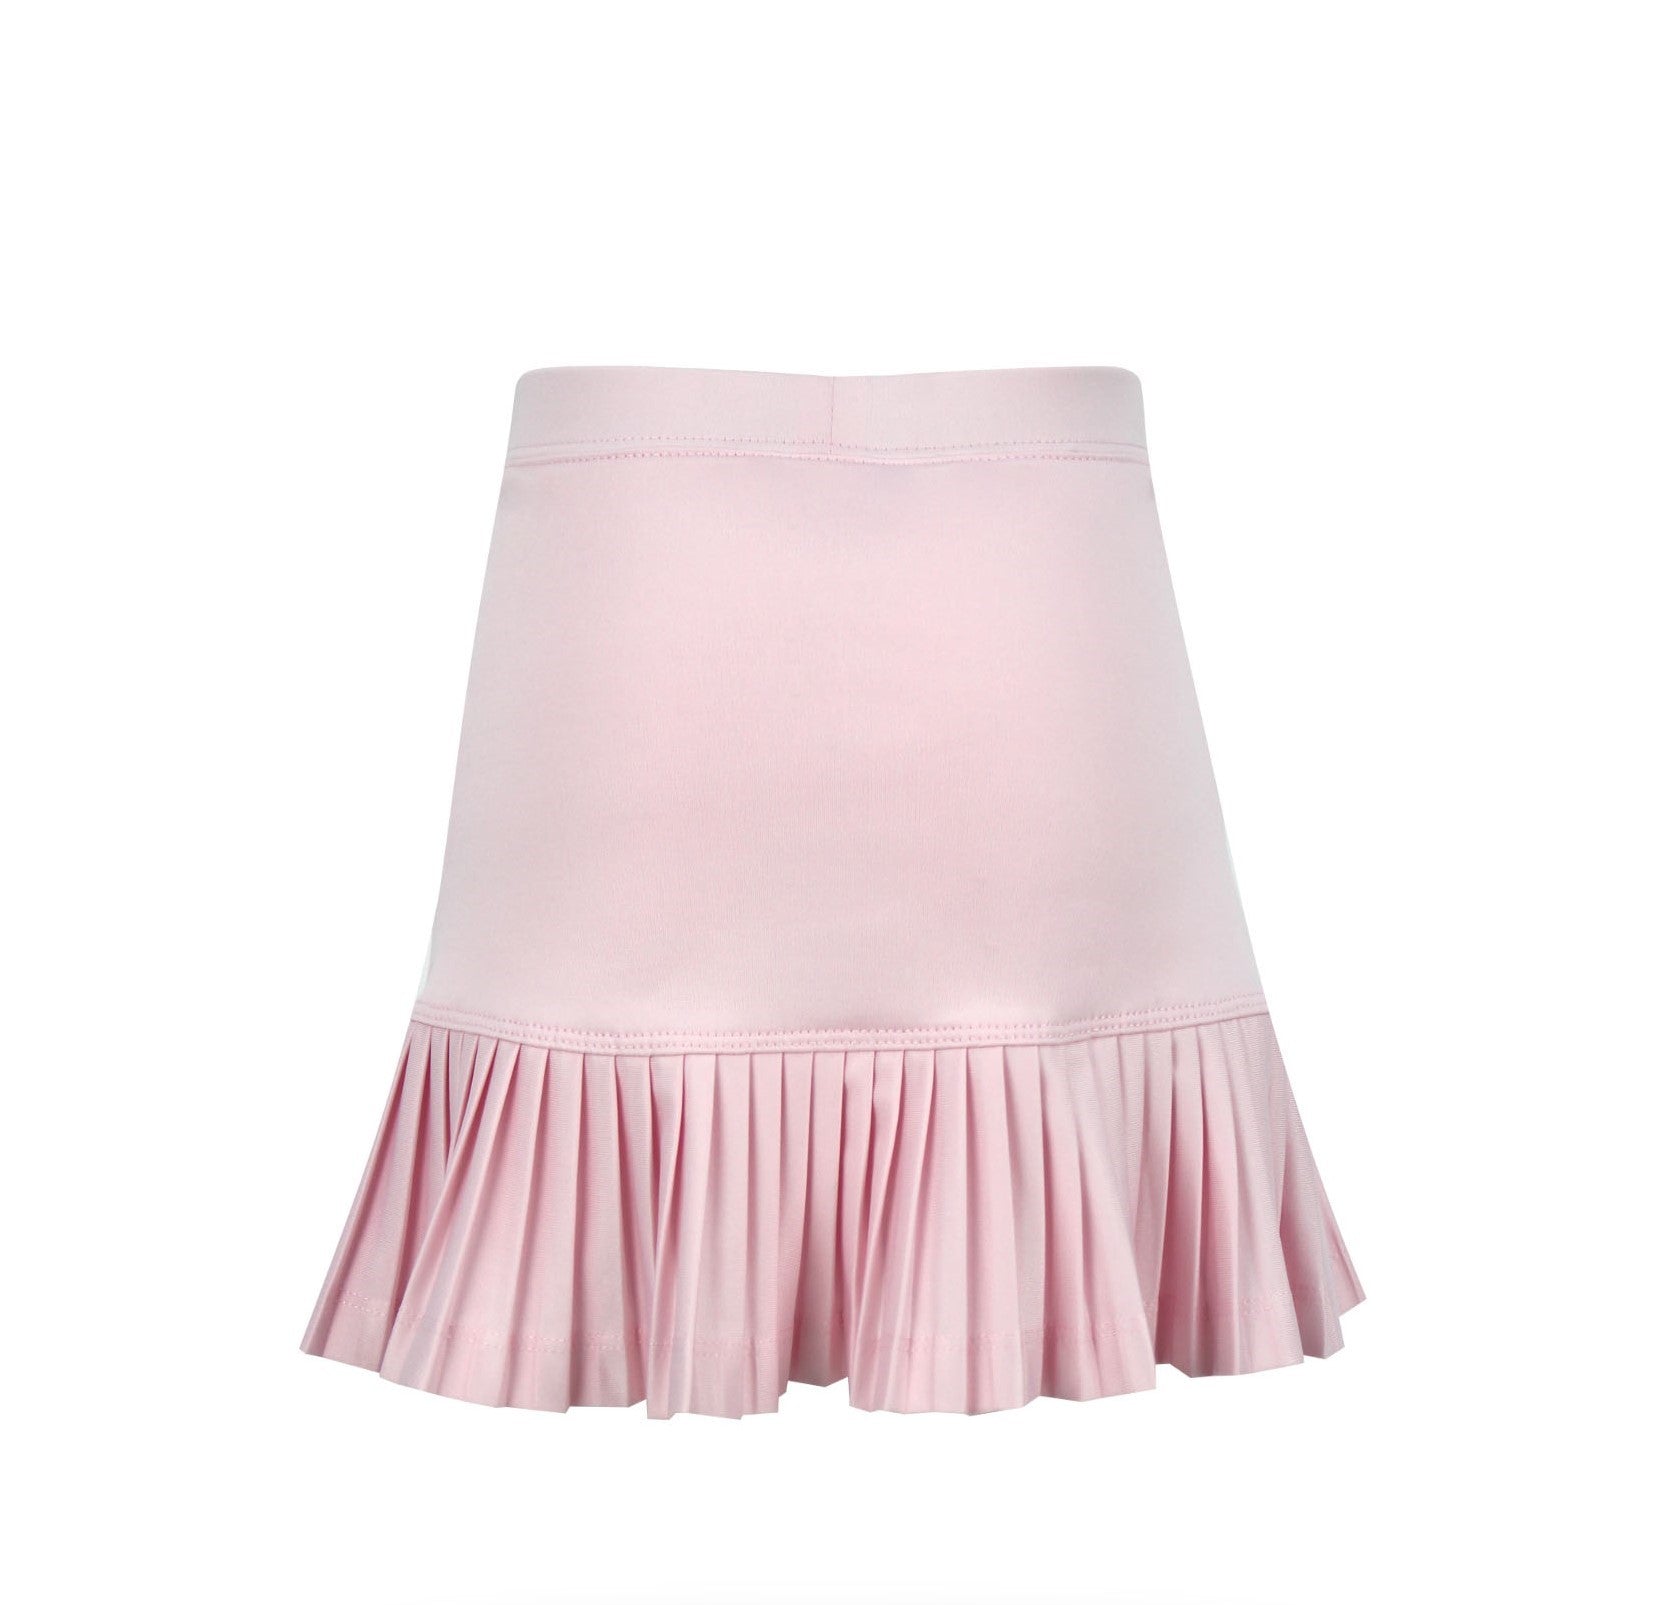 #Cotton Candy Pink Skirt - Little Miss Tennis